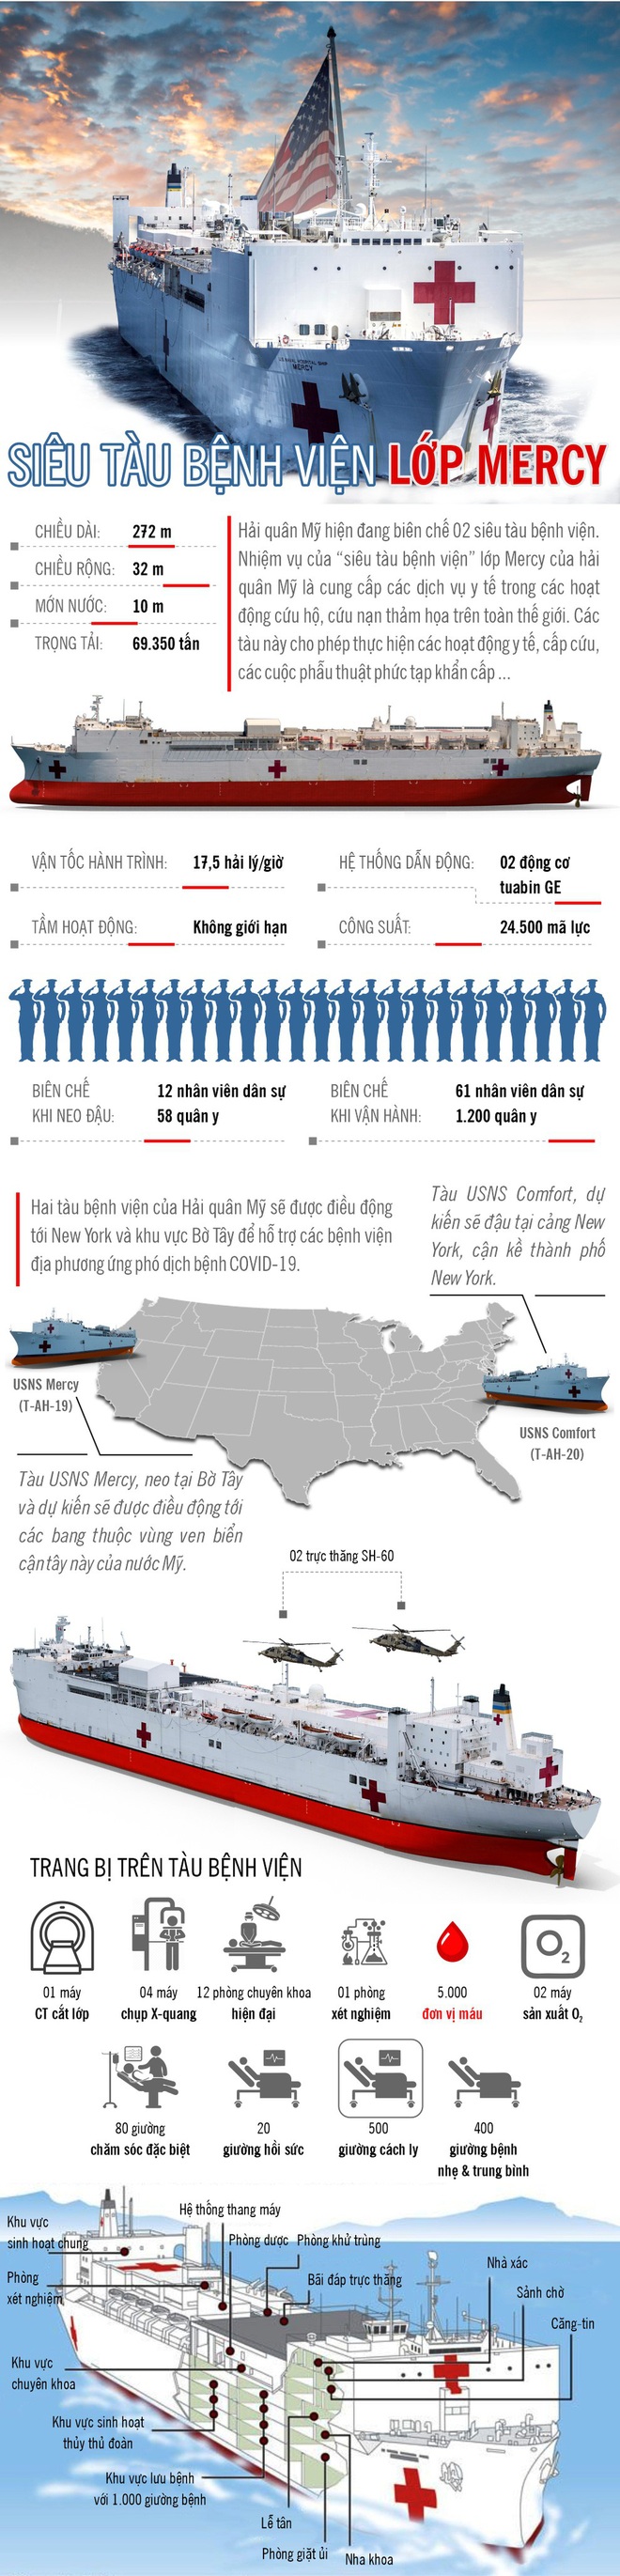 Infographic: “Siêu tàu bệnh viện” của Hải quân Mỹ tham gia chống dịch - Ảnh 1.